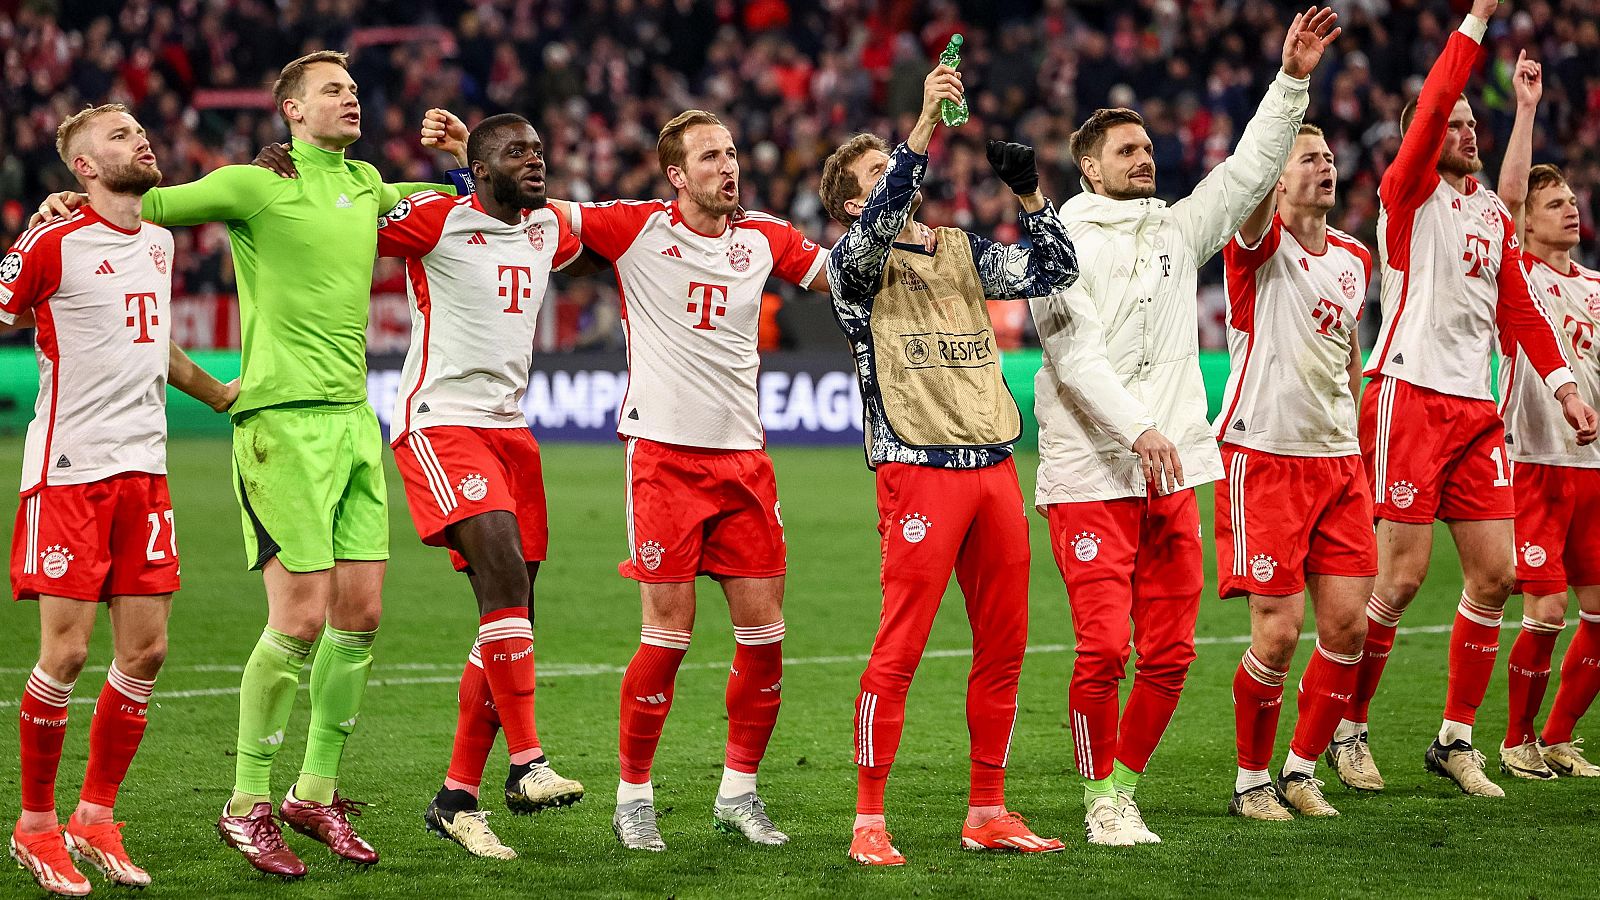 Champions: El Bayern de Múnicha celebra su victoria sobre el Arsenal